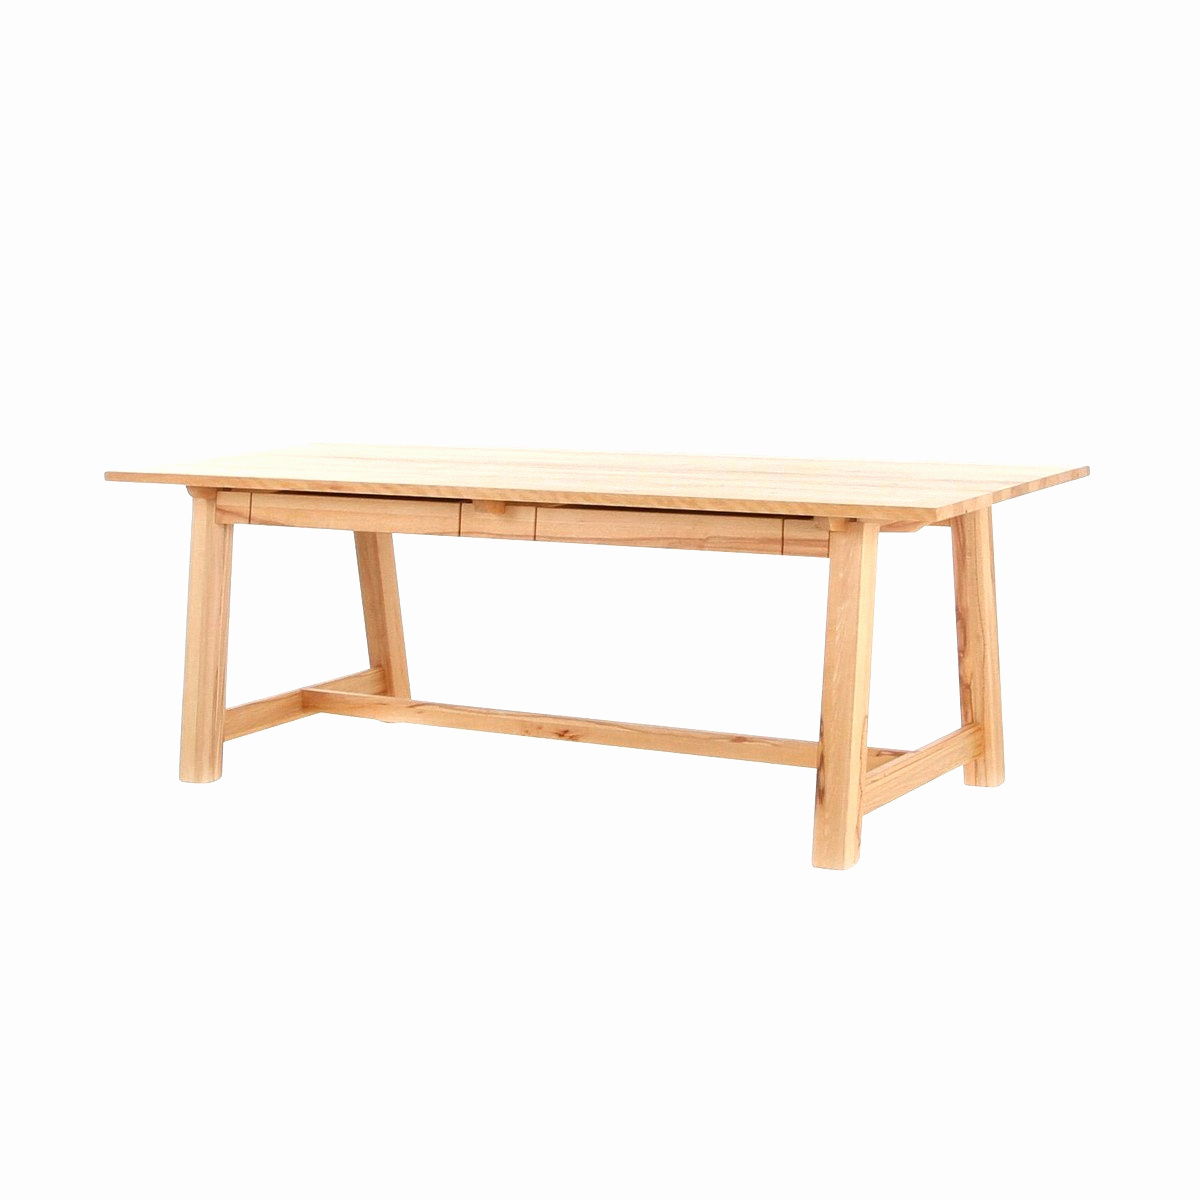 Chaise De Table Luxe Location Table Pliante Beau Table Pliante Design élégant